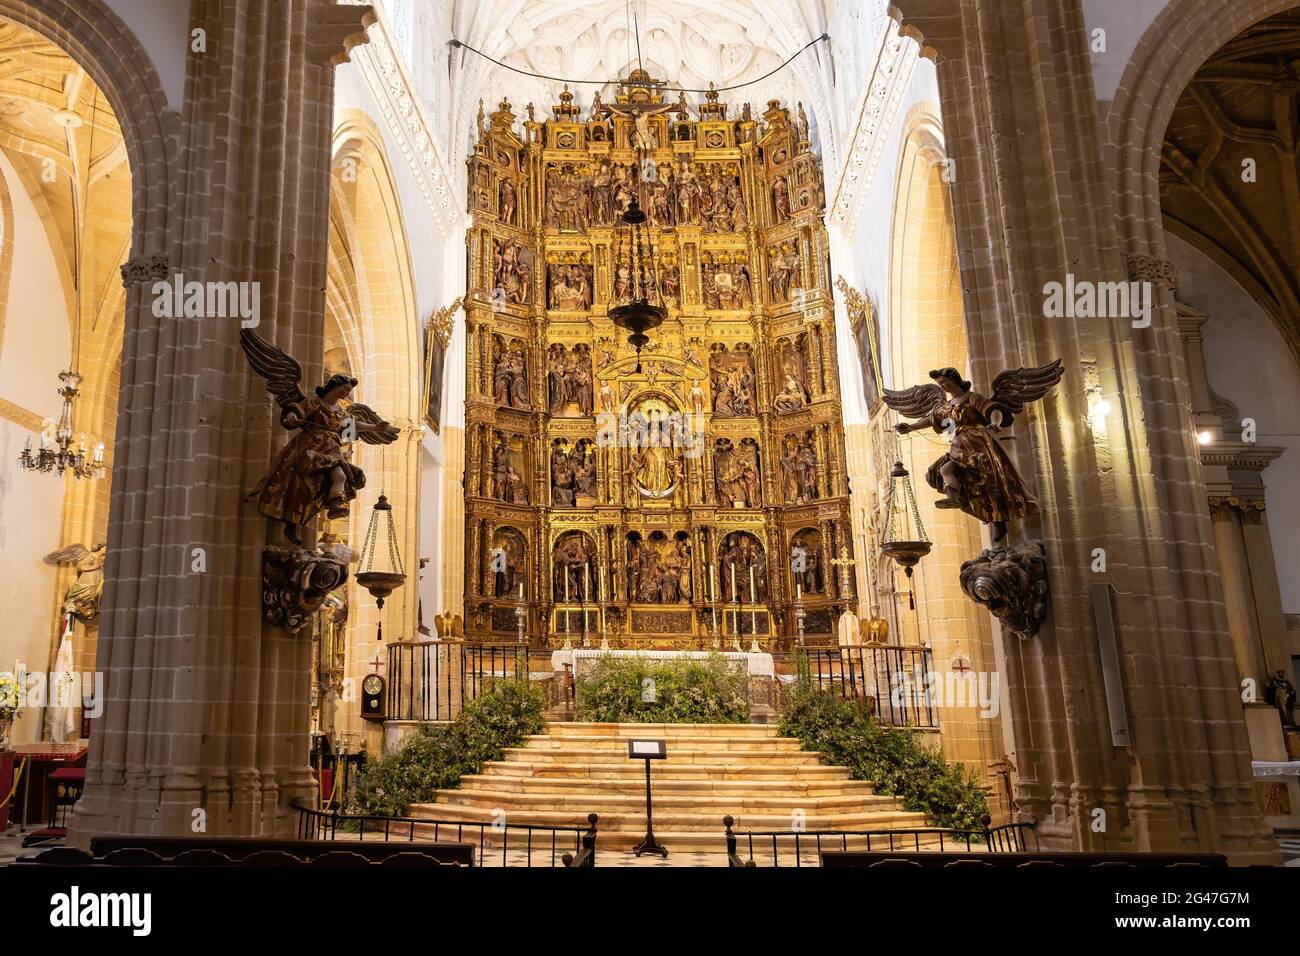 Medina-Sidonia, Cadix, Espagne - 15 juin 2021 : autel principal et retable de l'église de Santa Maria dans la ville de Medina-Sidonia dans la province de Banque D'Images